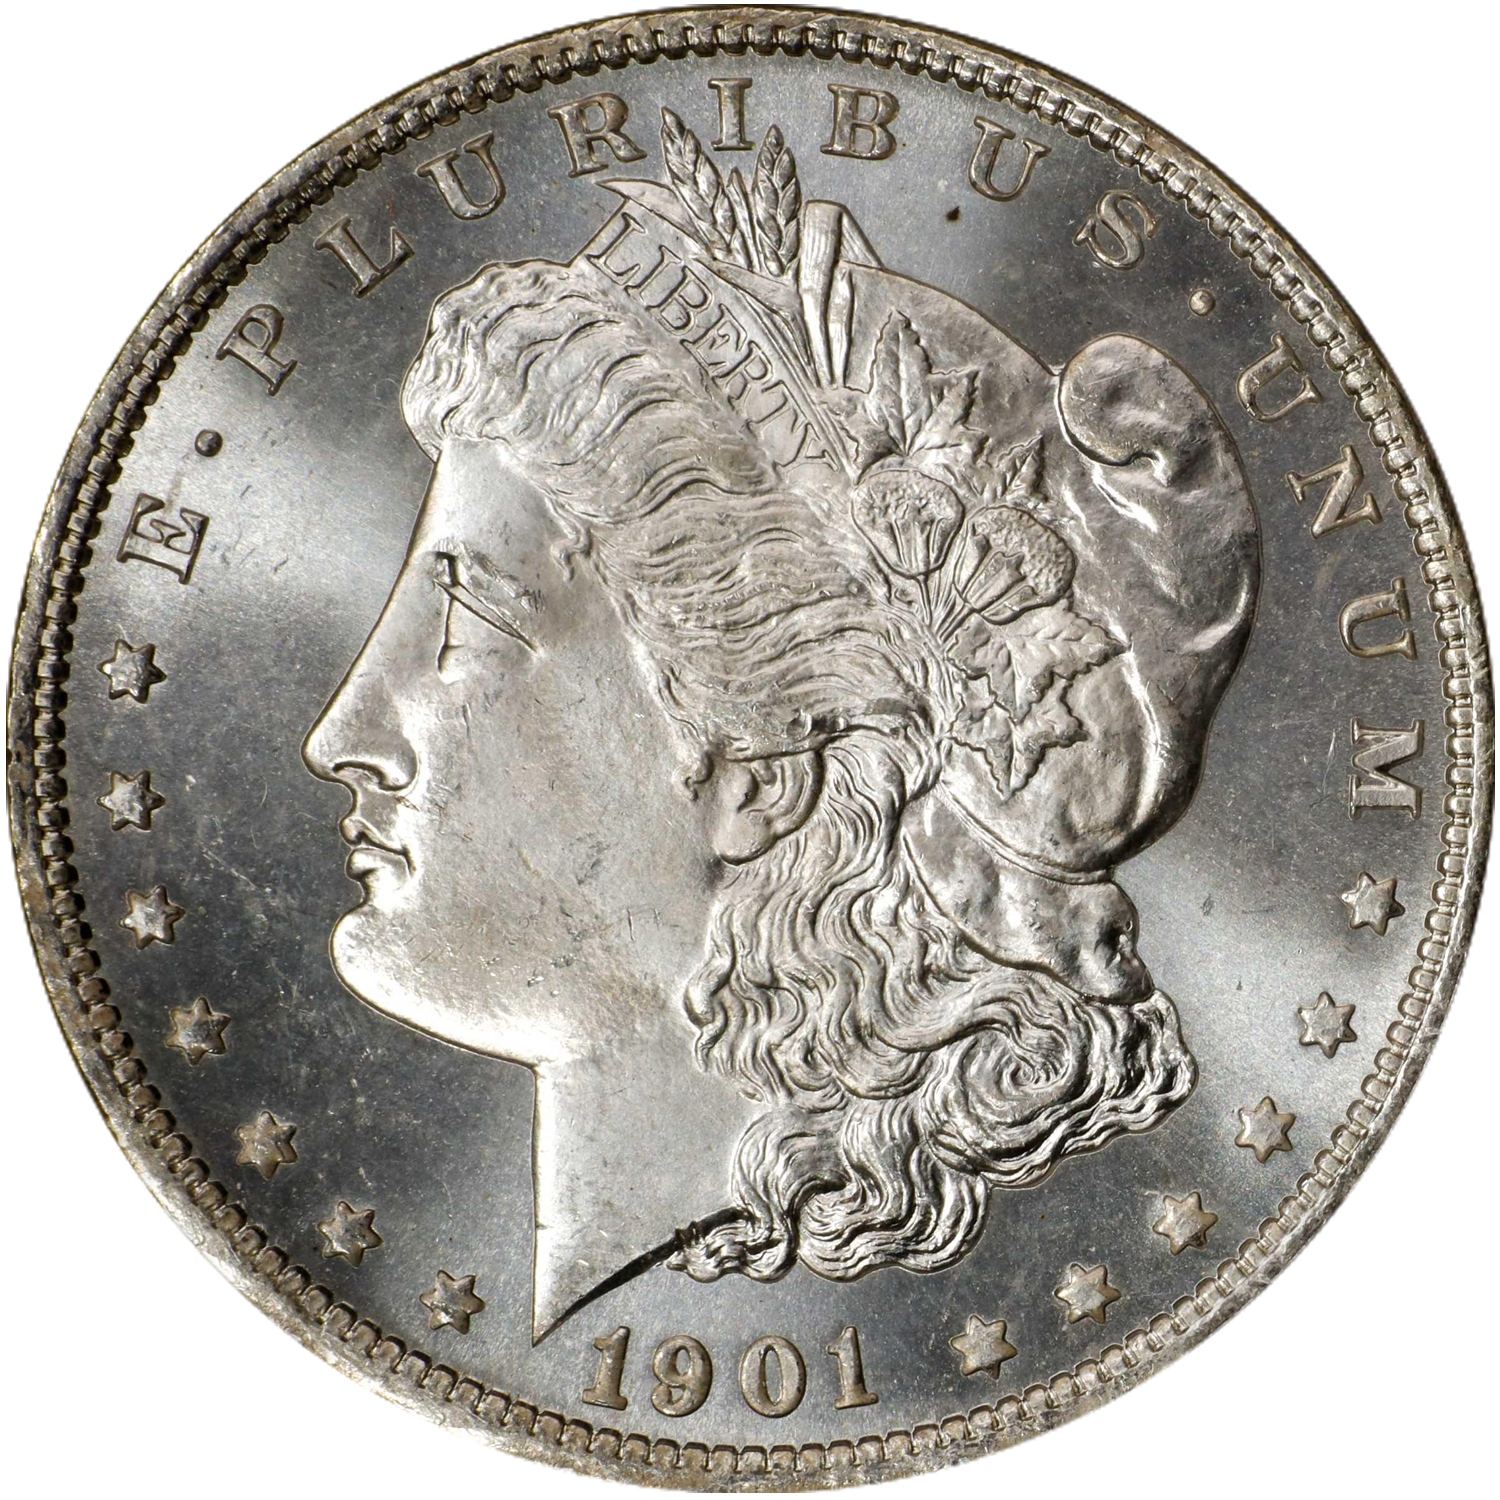 1901 o mint mark morgan dollar value guide